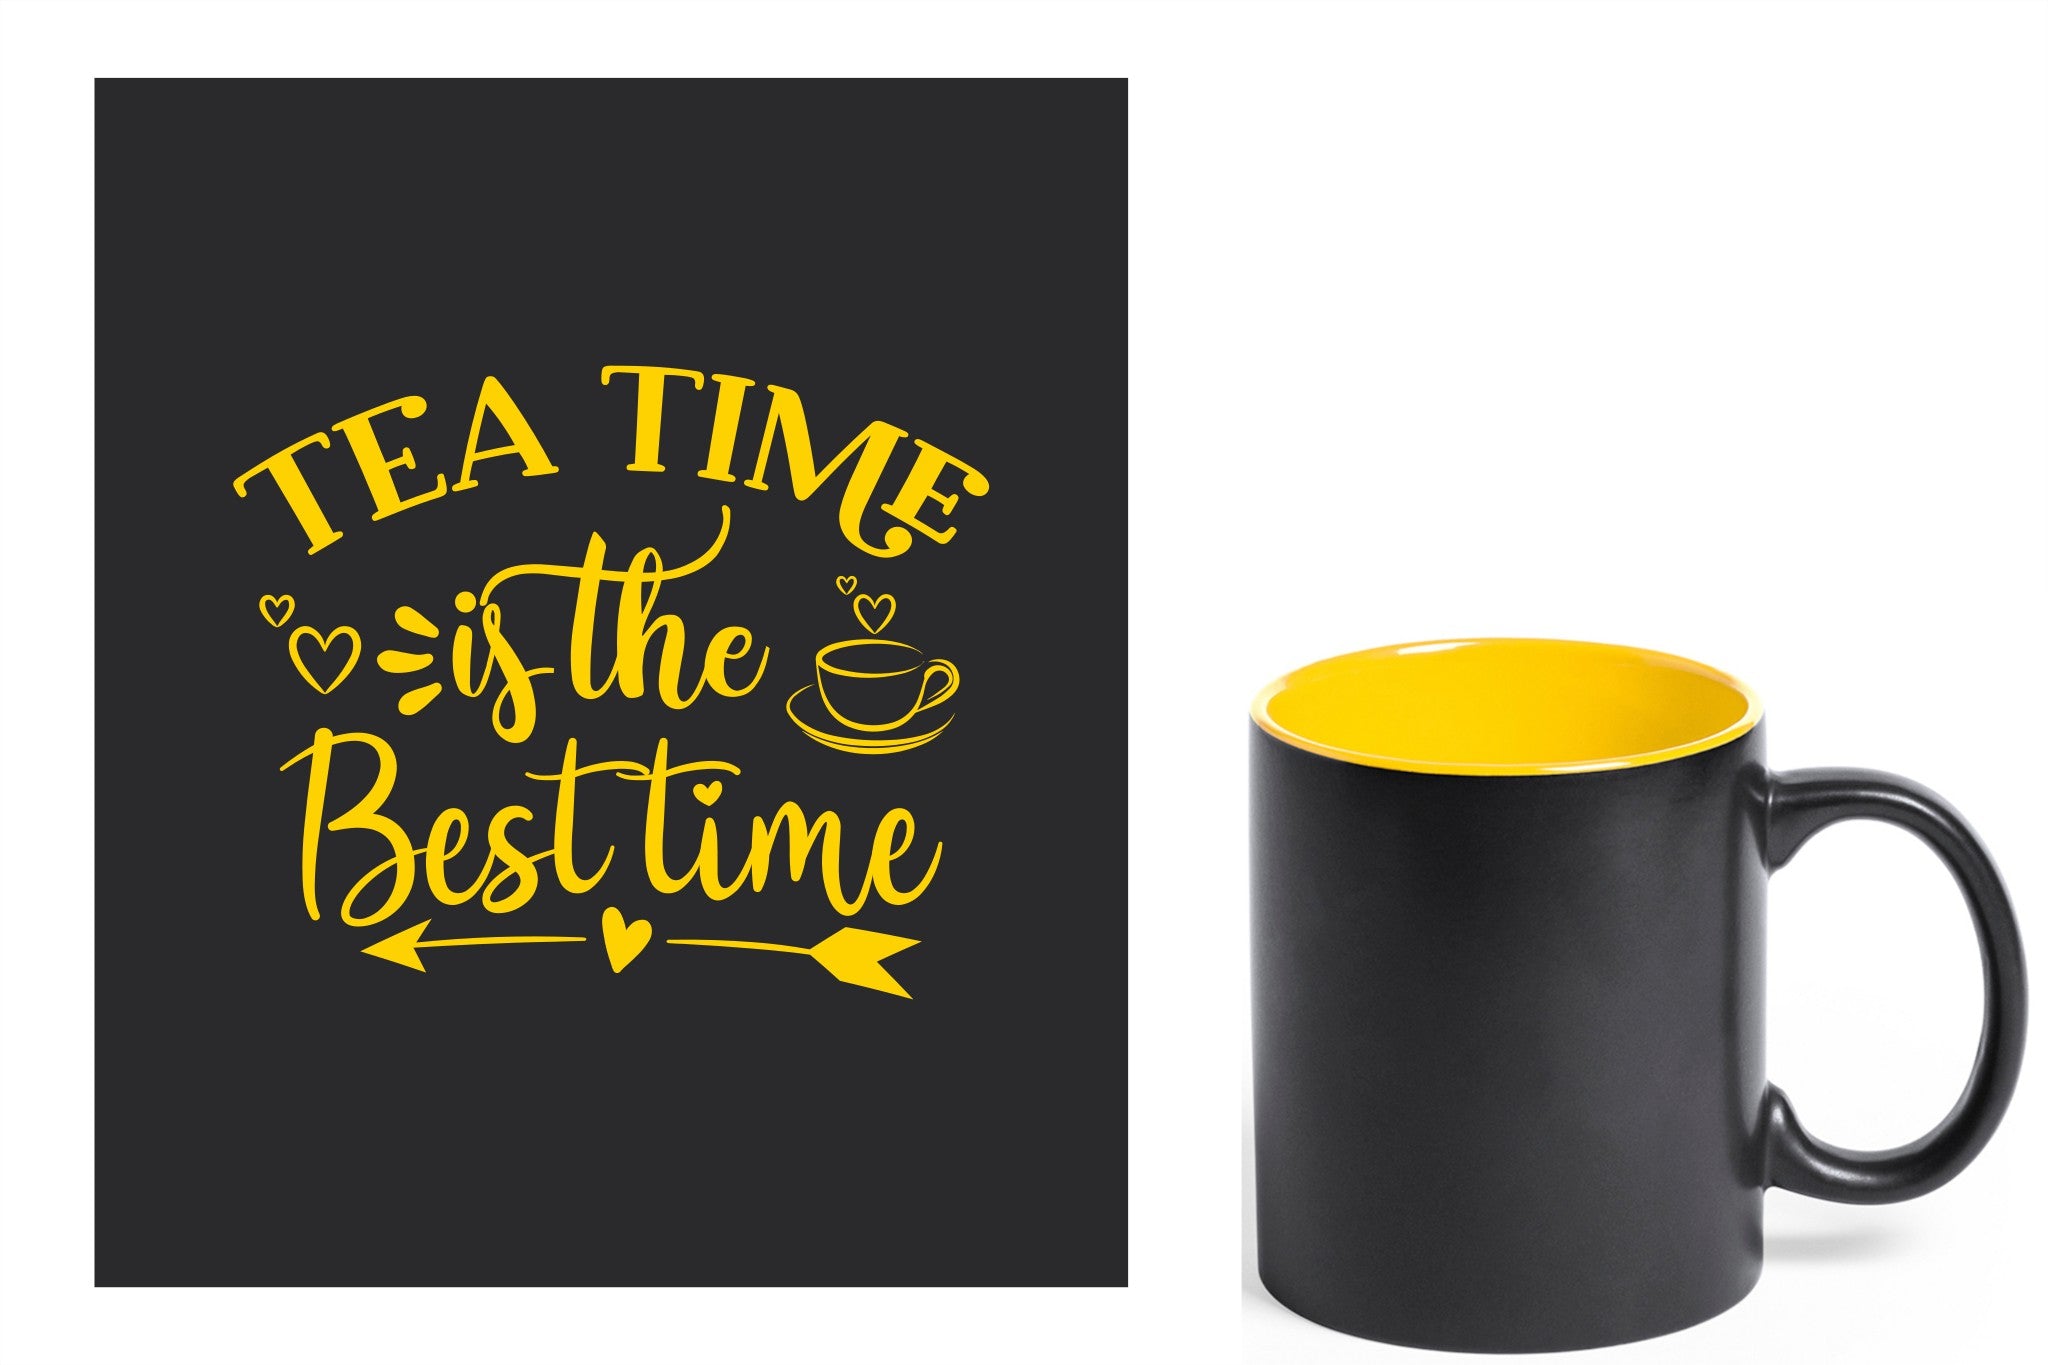 zwarte keramische mok met gele gravure  'Tea time is the best time'.